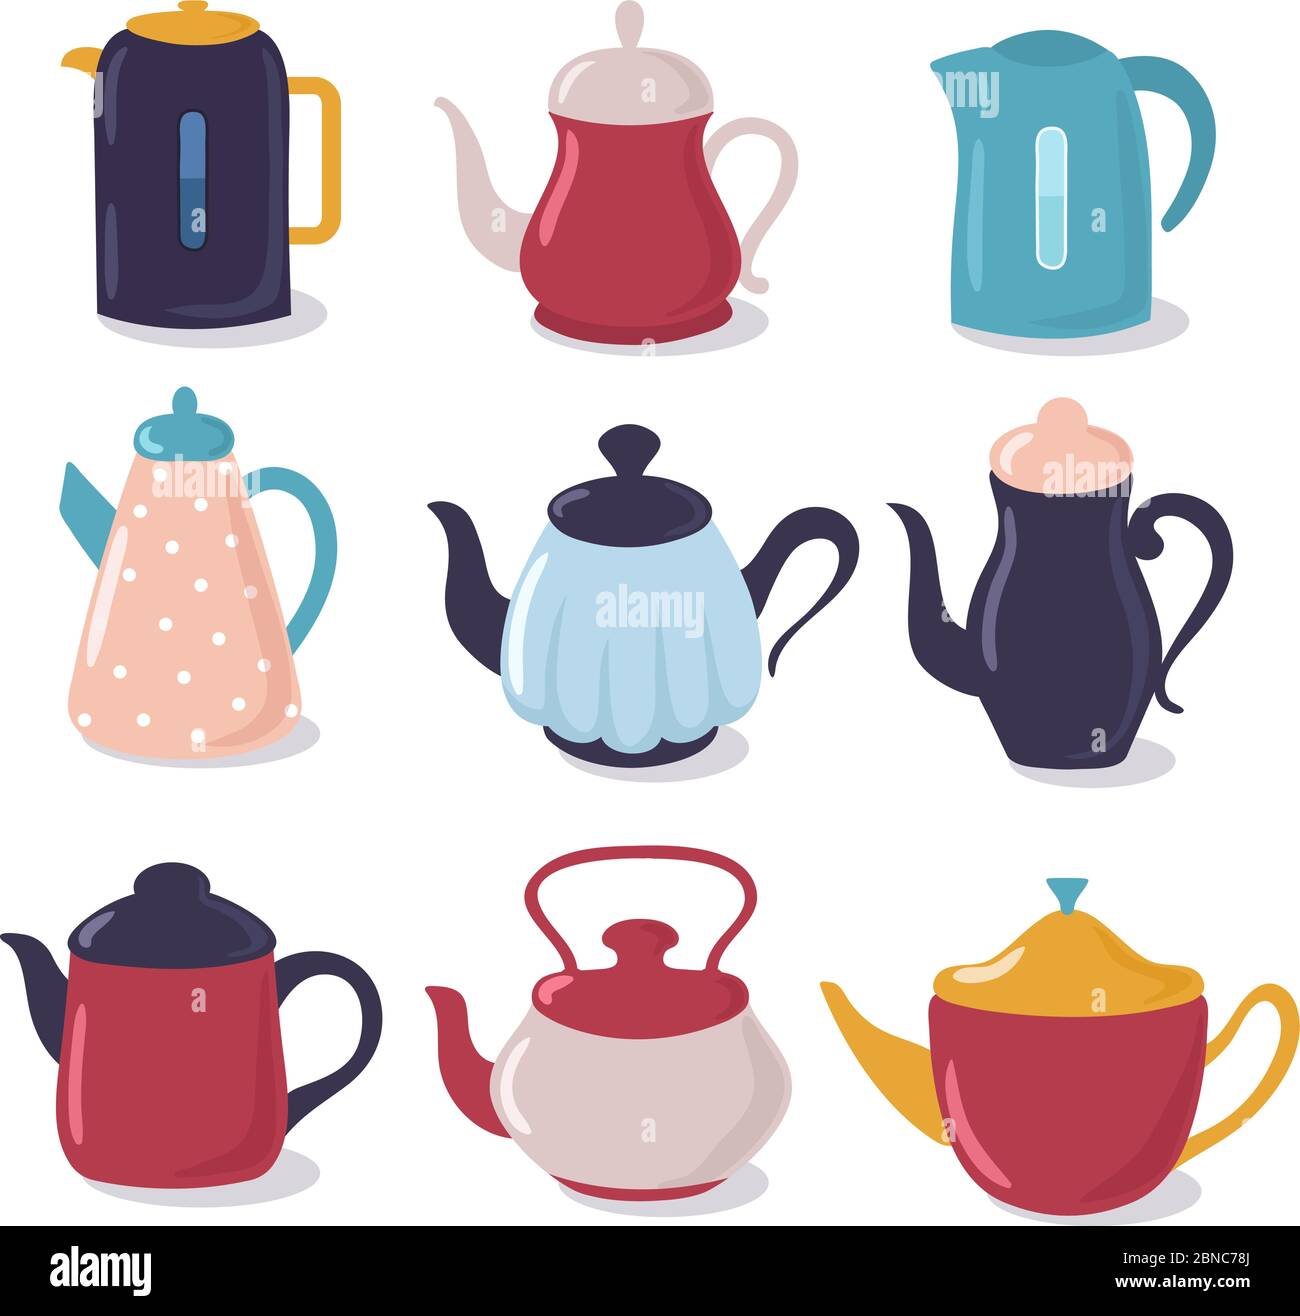 Wasserkocher mit Cartoon-Stil. Teekanne mit Auslauf Küchengeschirr, Haushaltsutensilien Vektor-Sammlung. Wasserkocher Tee, Geschirr für Heißgetränke Illustration Stock Vektor